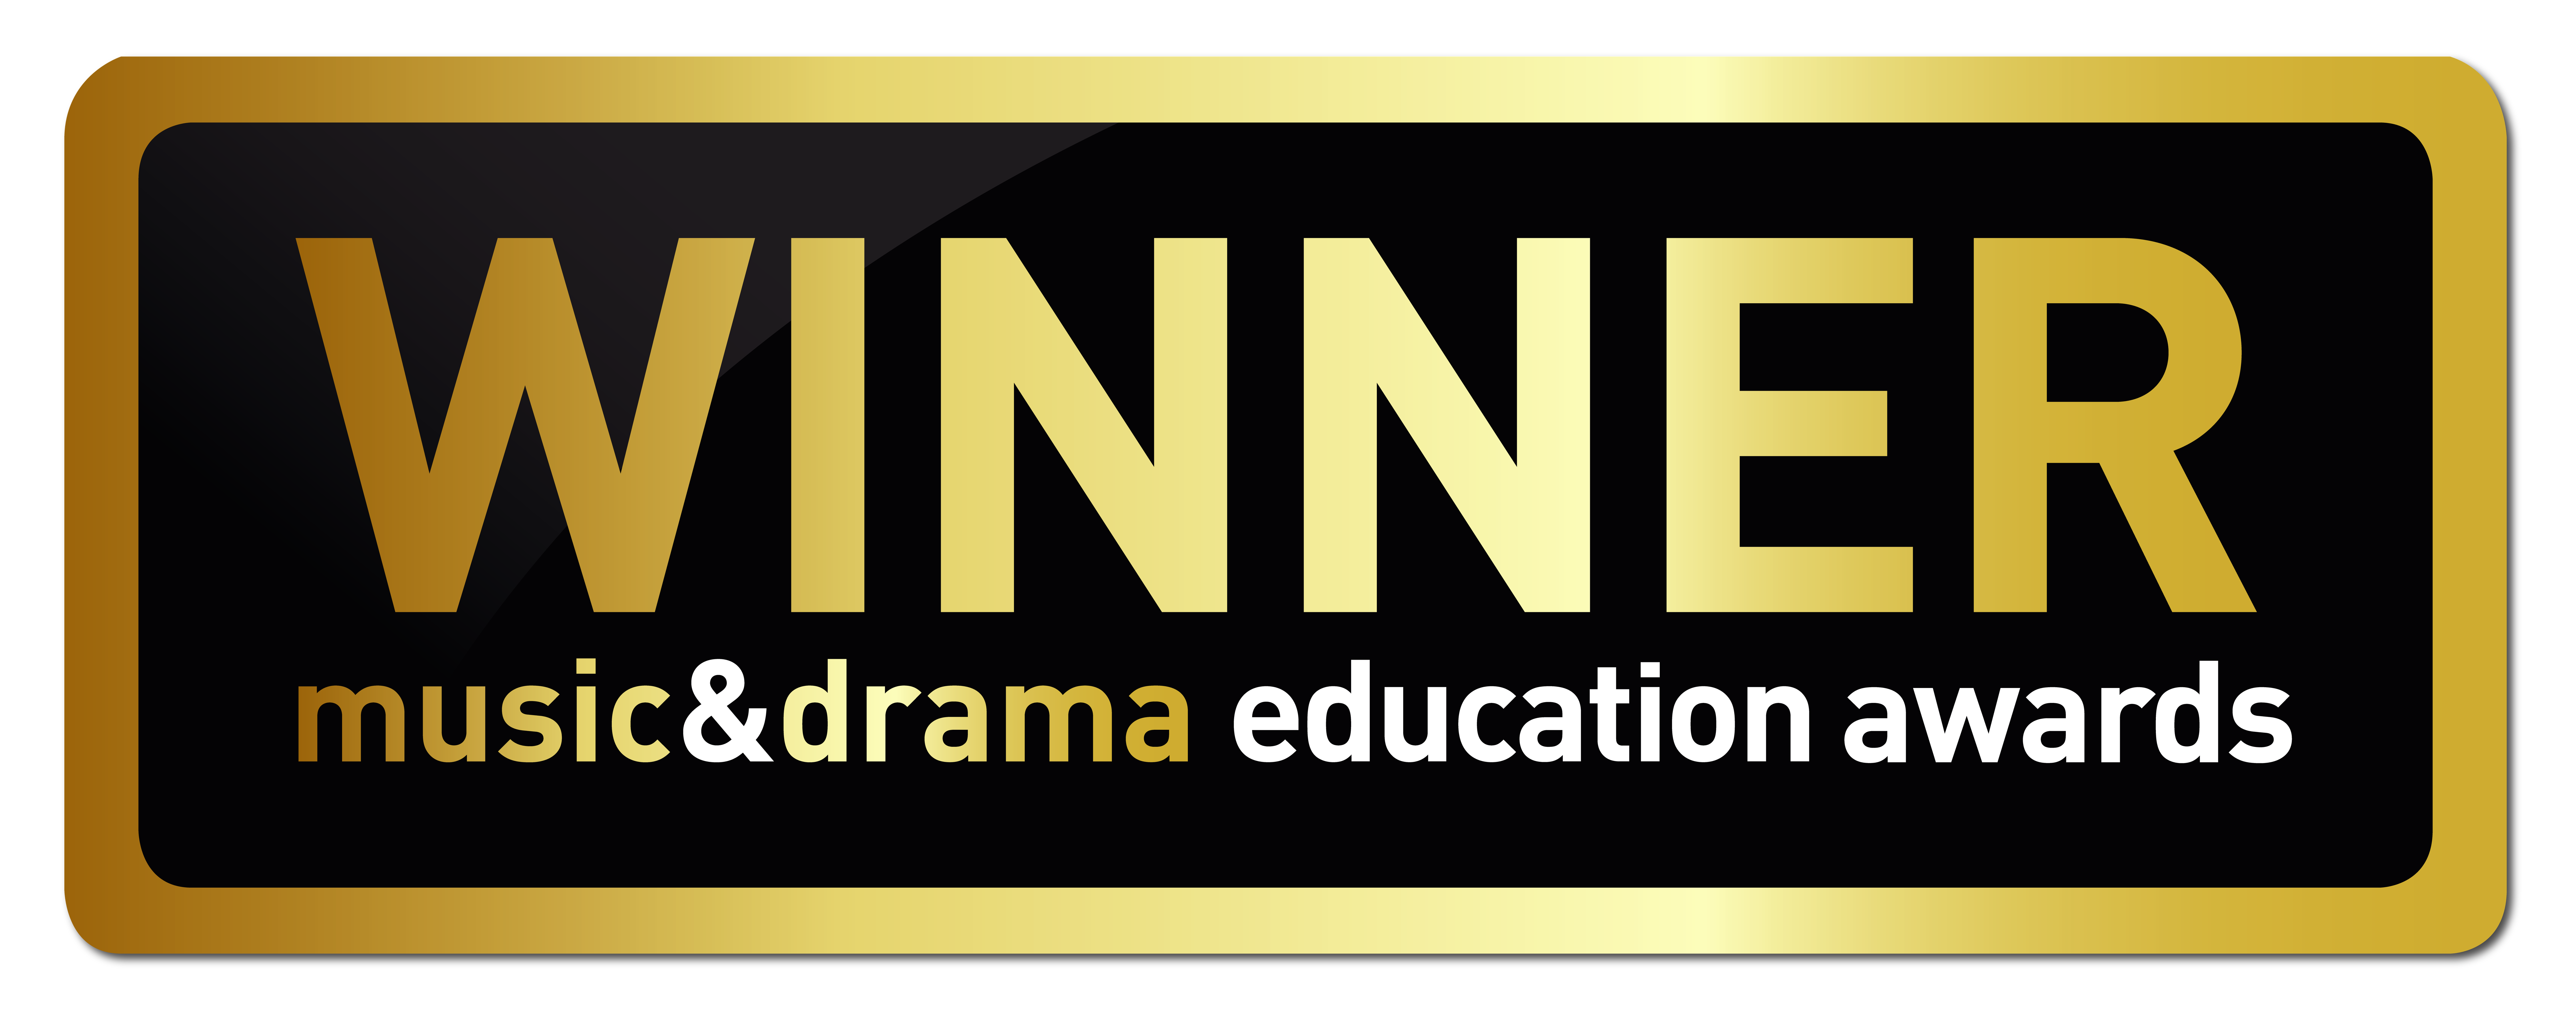 Music&Drama Education Awards